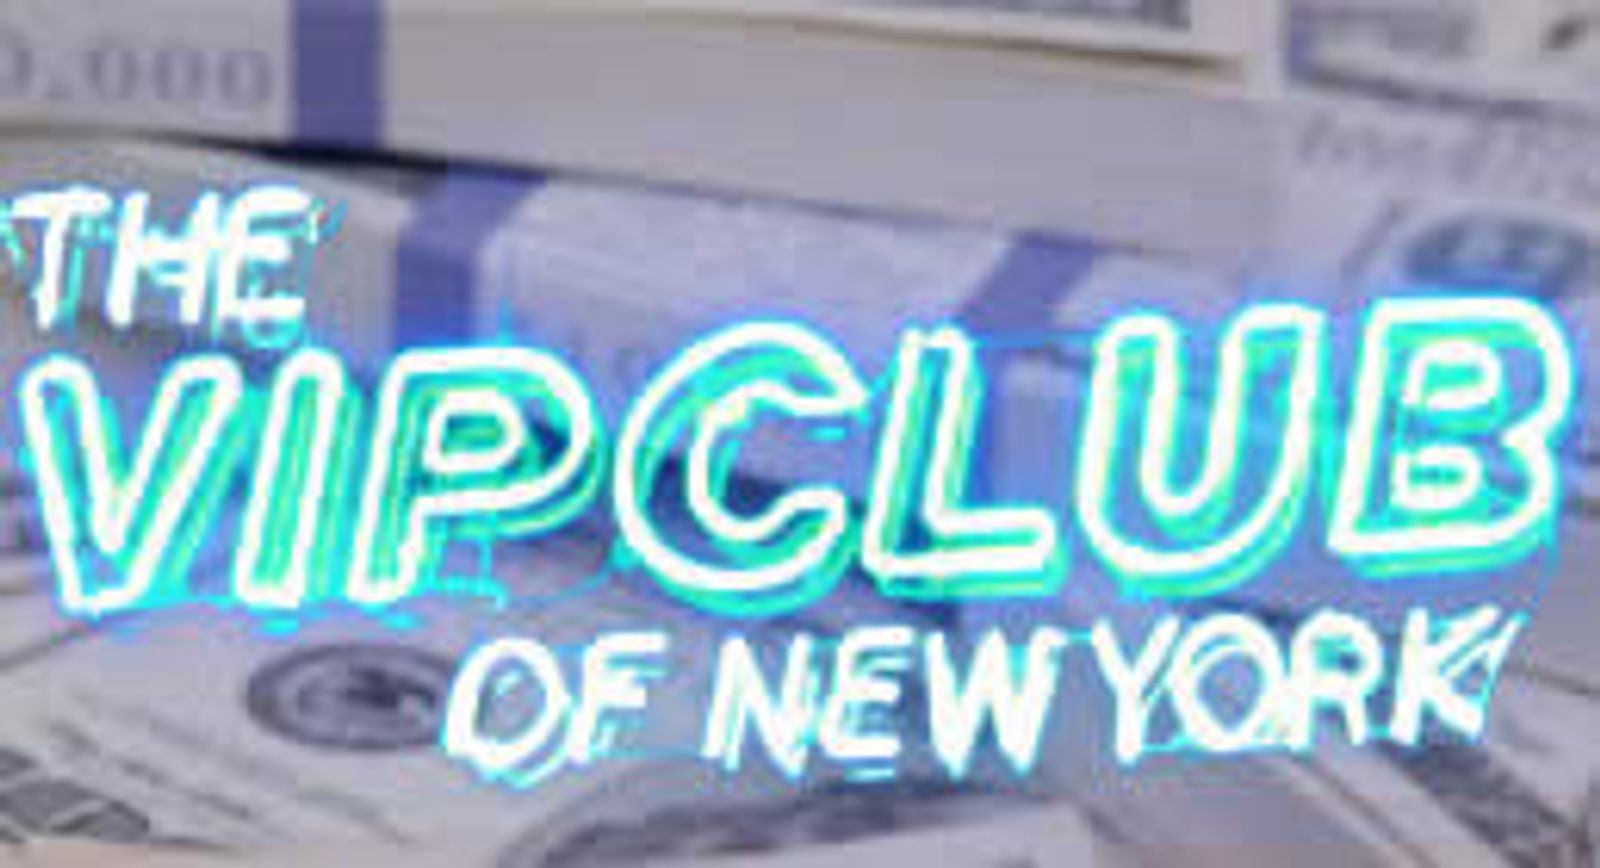 Manhattan's VIP Club Sued Over Allegedly Stolen Tips